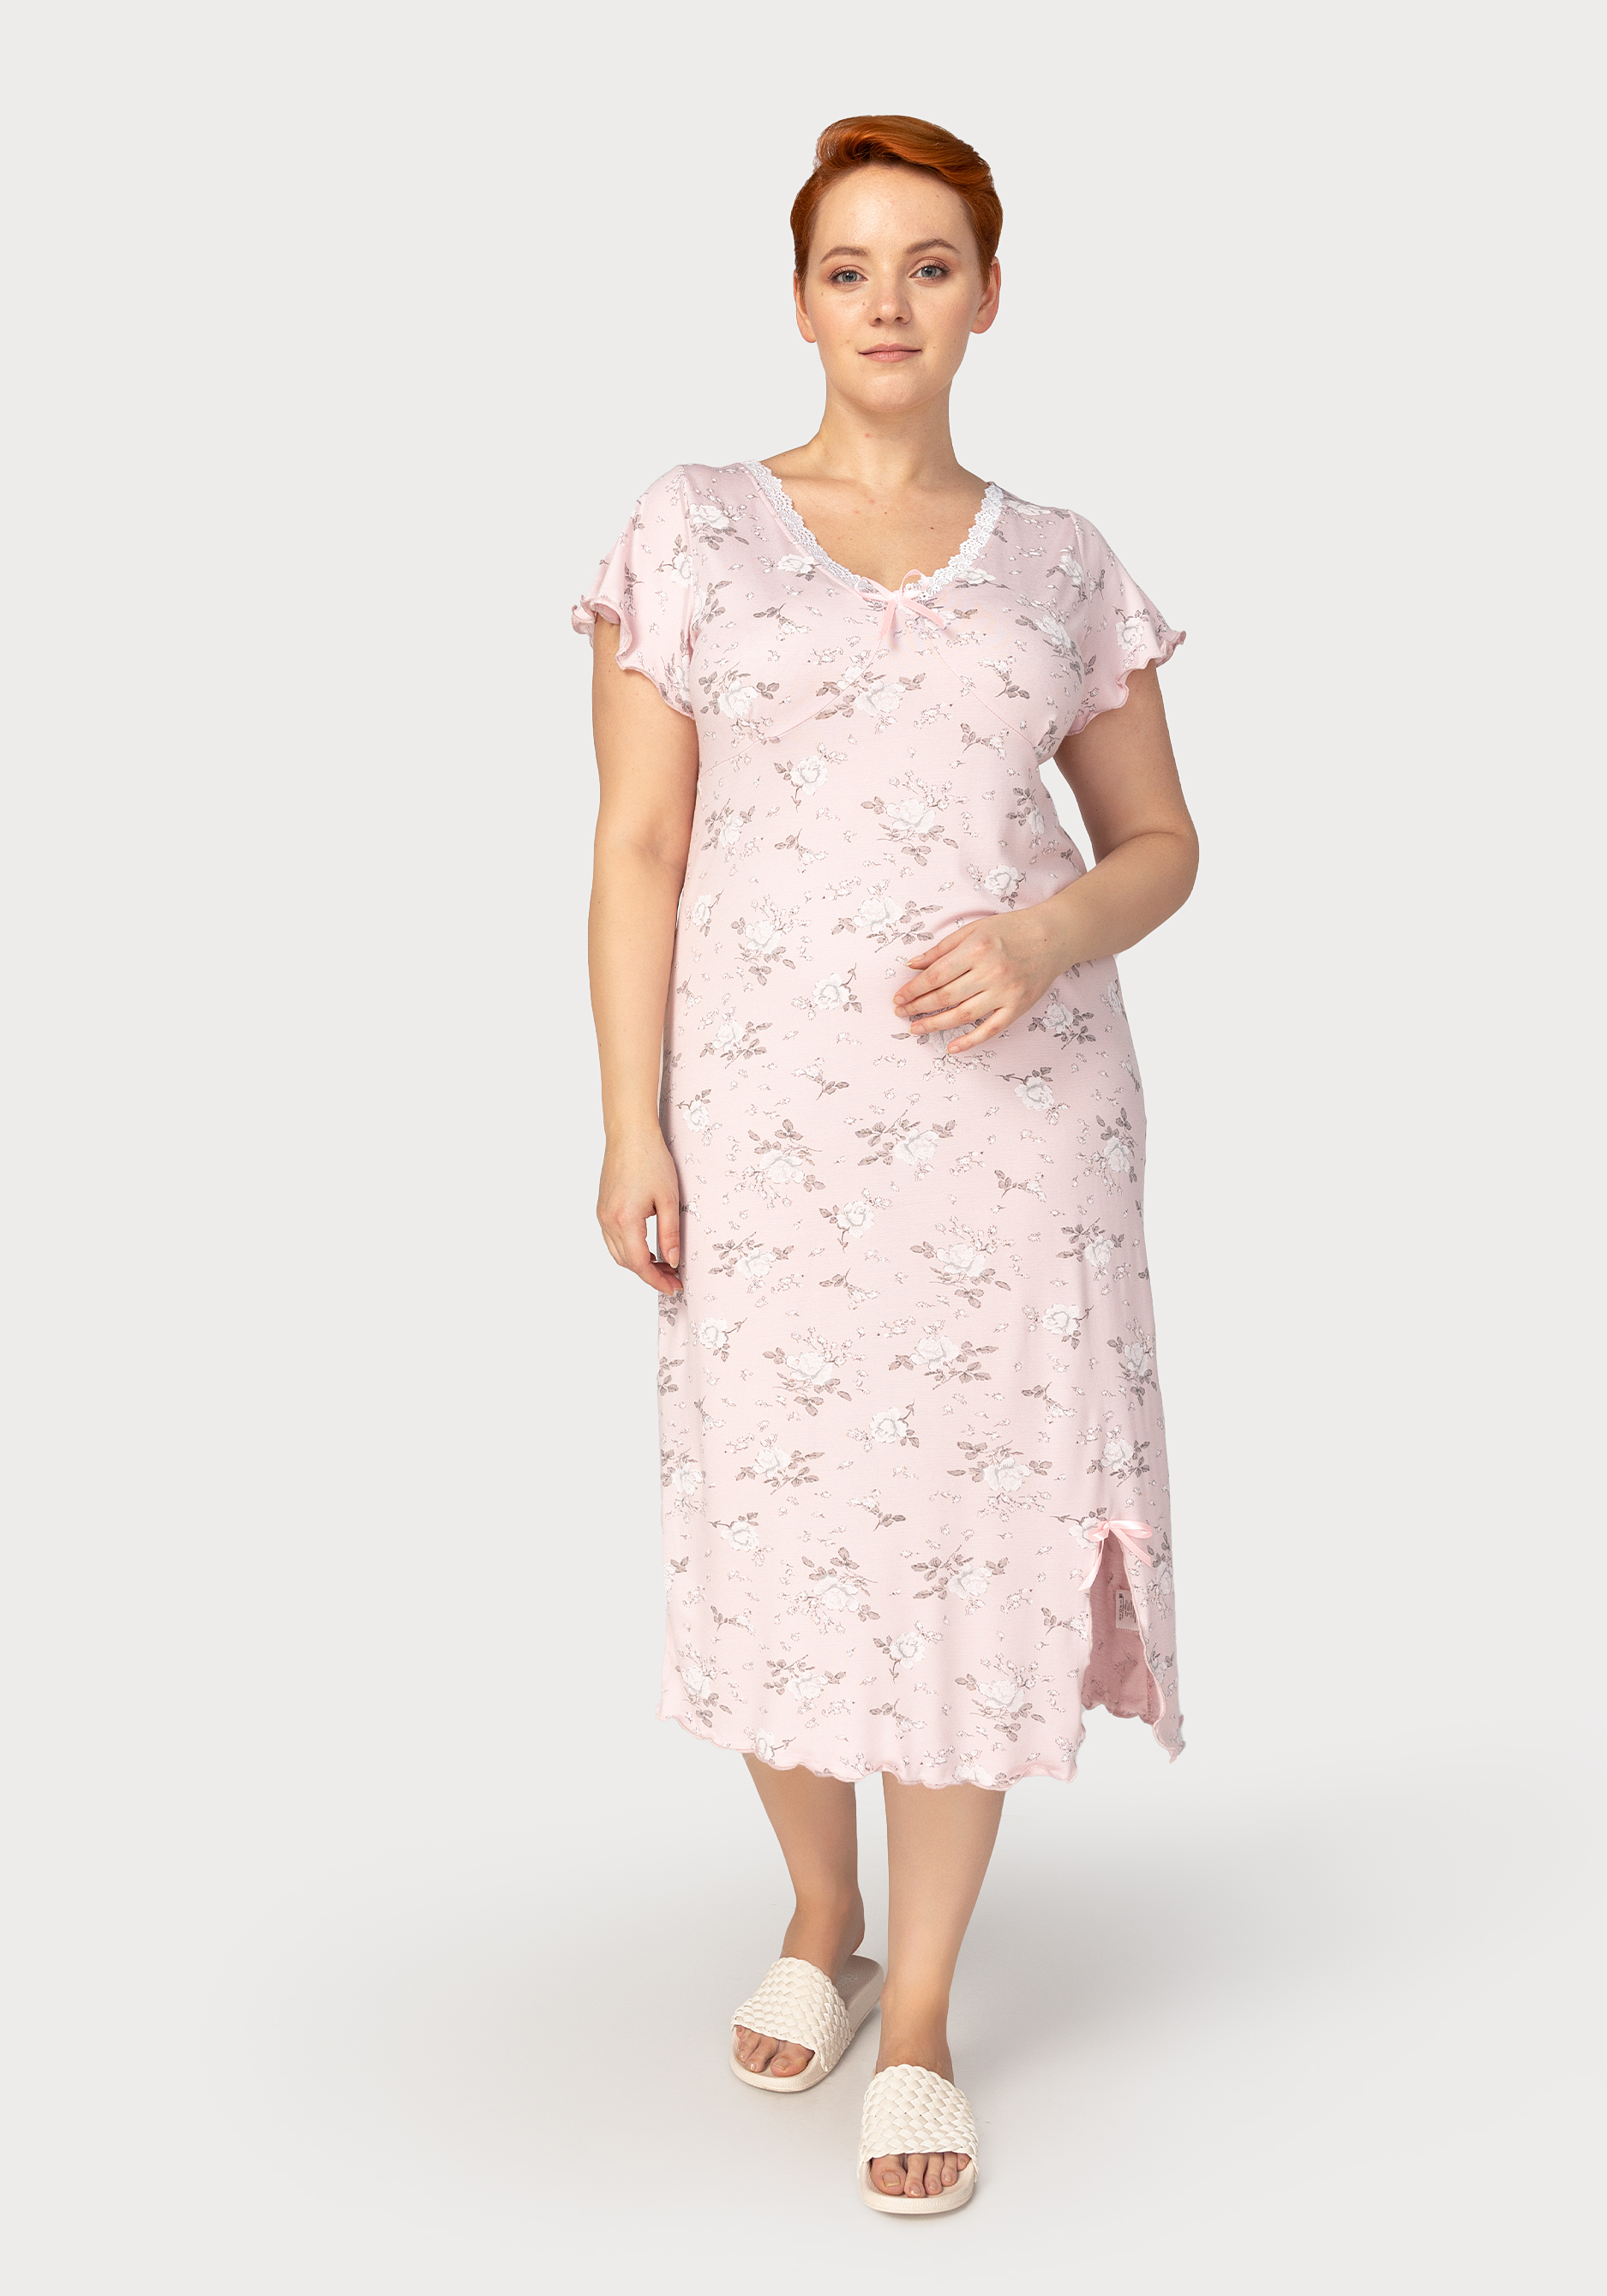 Сорочка женская «Анна», цвет розовый, размер 54